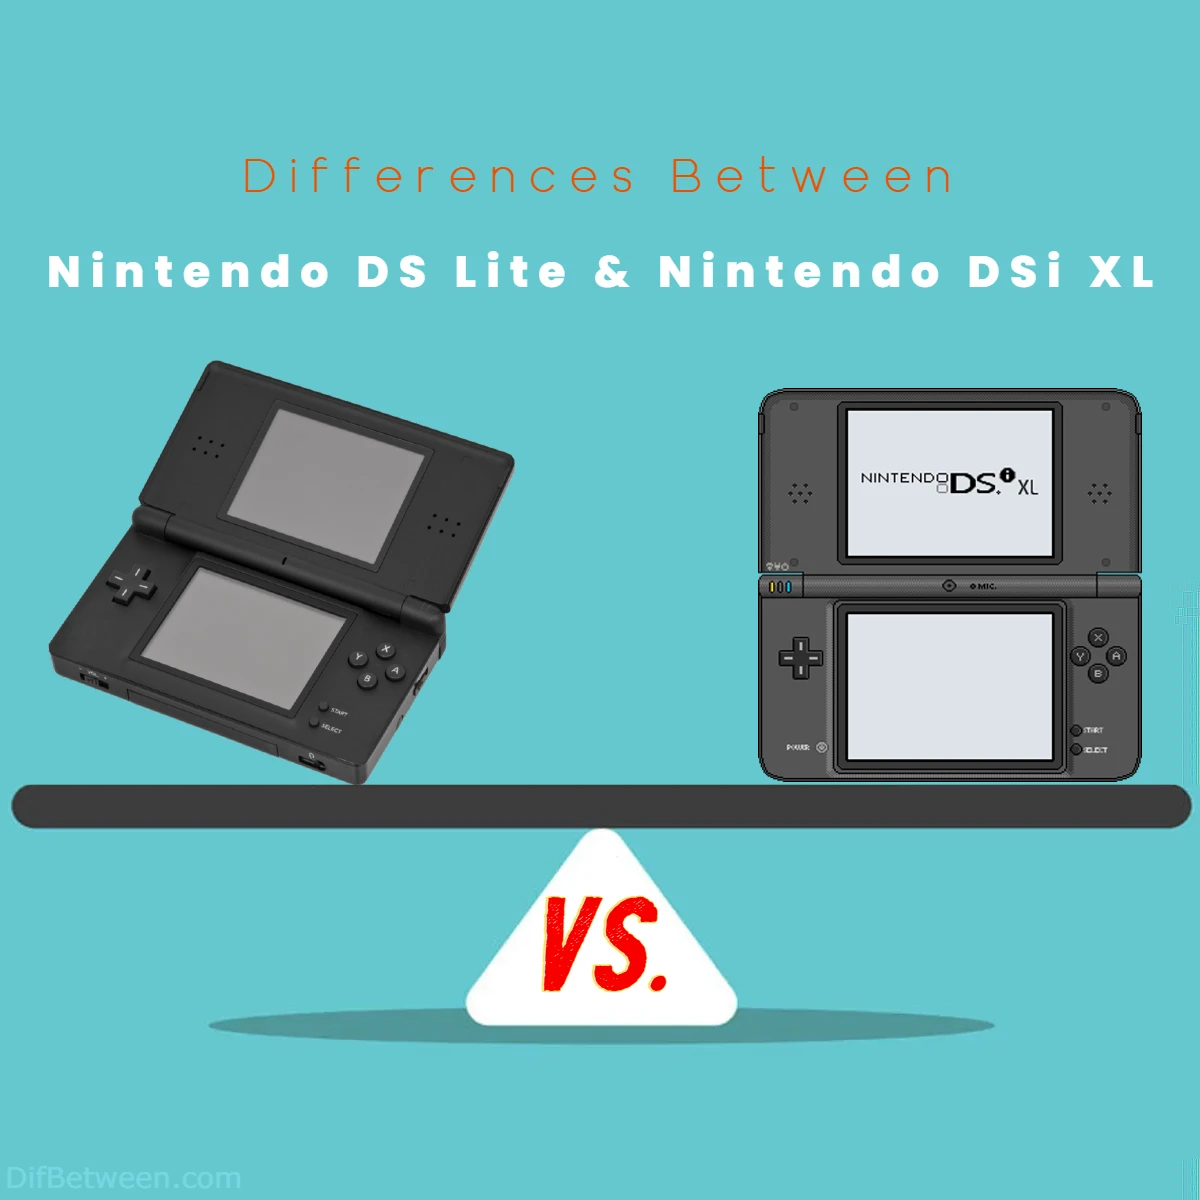 Differences Between Nintendo DS Lite vs Nintendo DSi XL